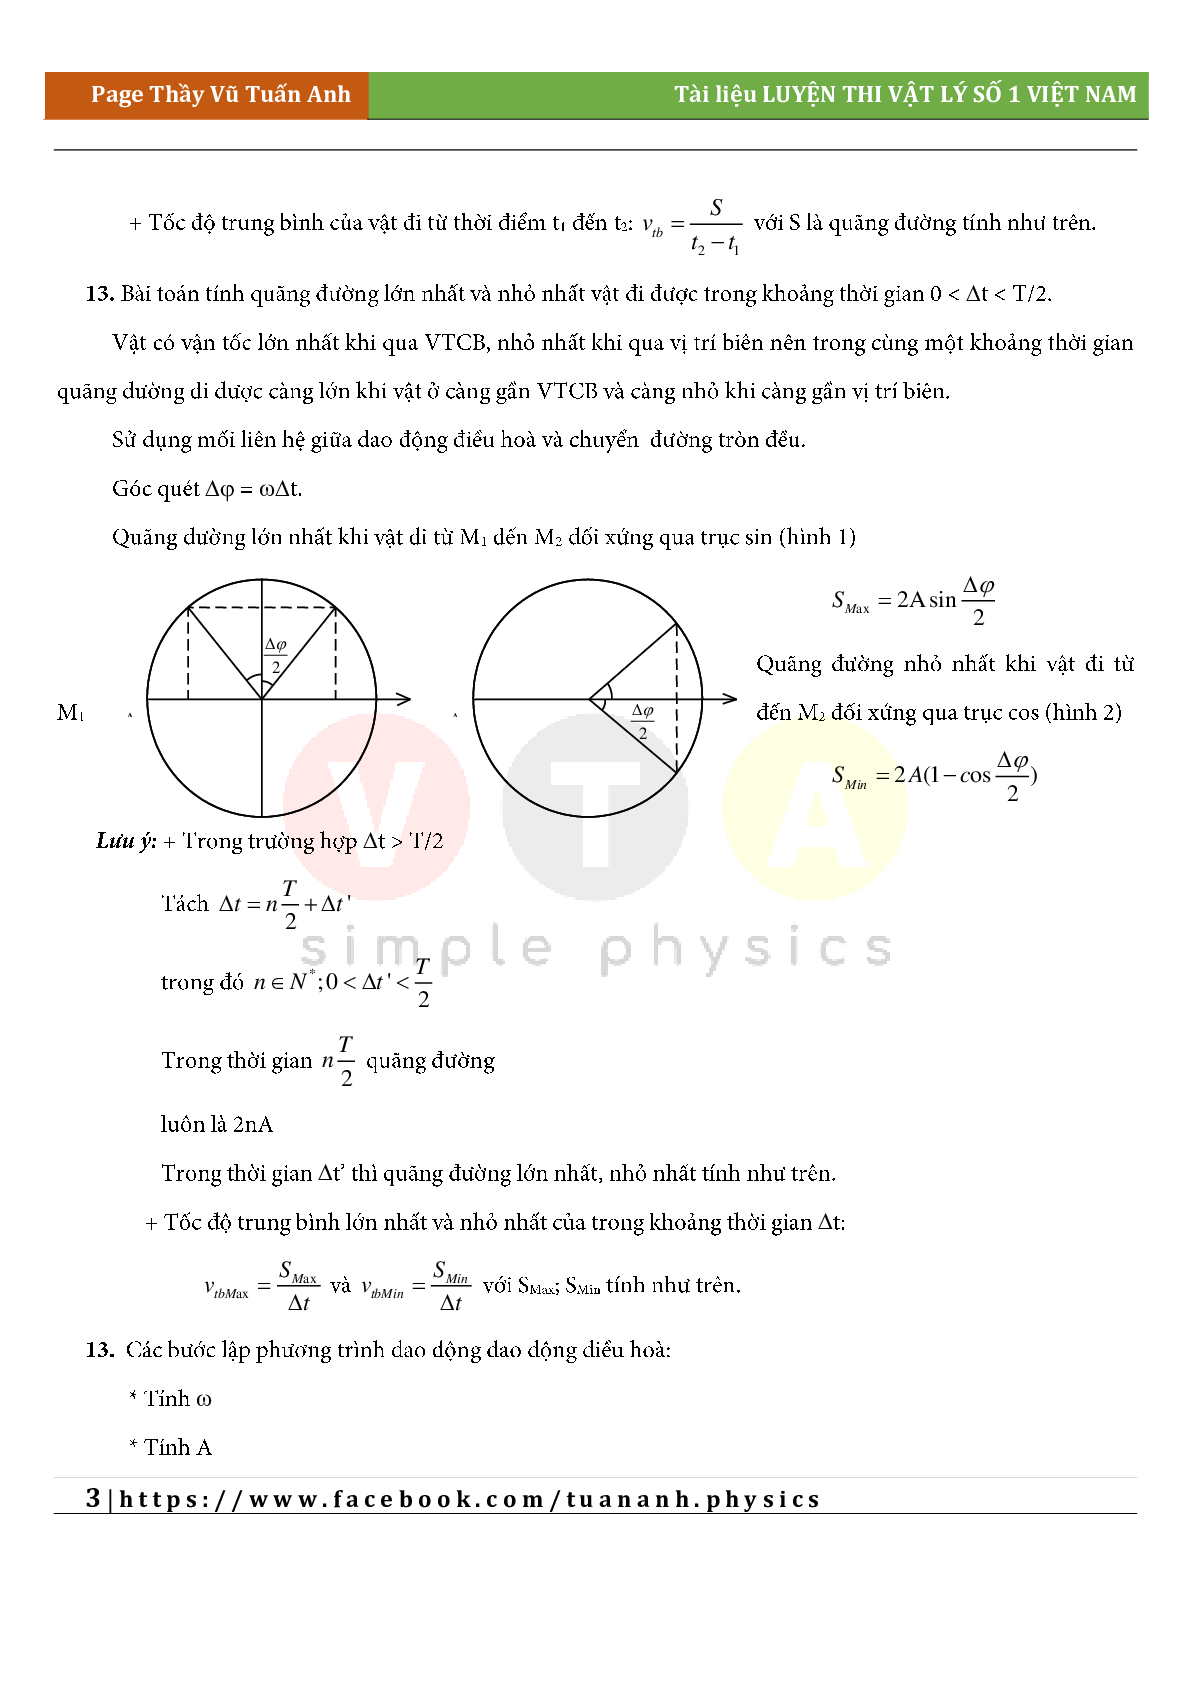 Công thức giải siêu nhanh môn Vật lý lớp 12 cả năm (trang 3)